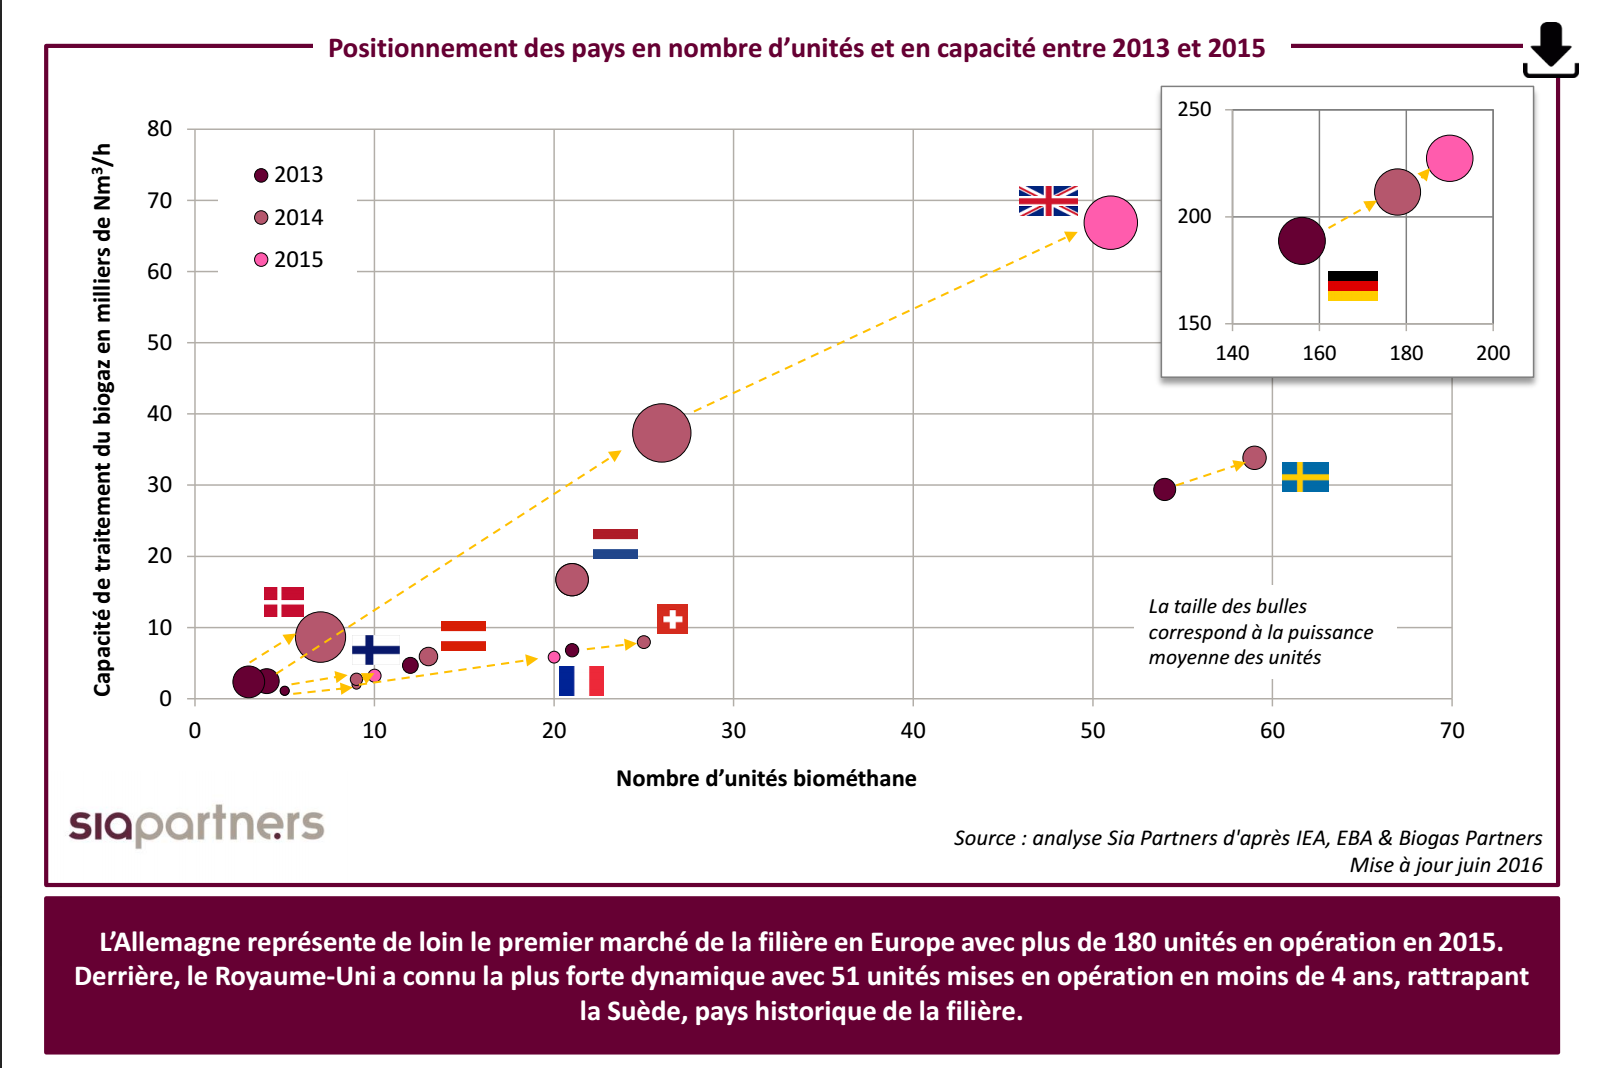 Positionnement des pays en nombre d’unités et en capacité entre 2013 et 2015